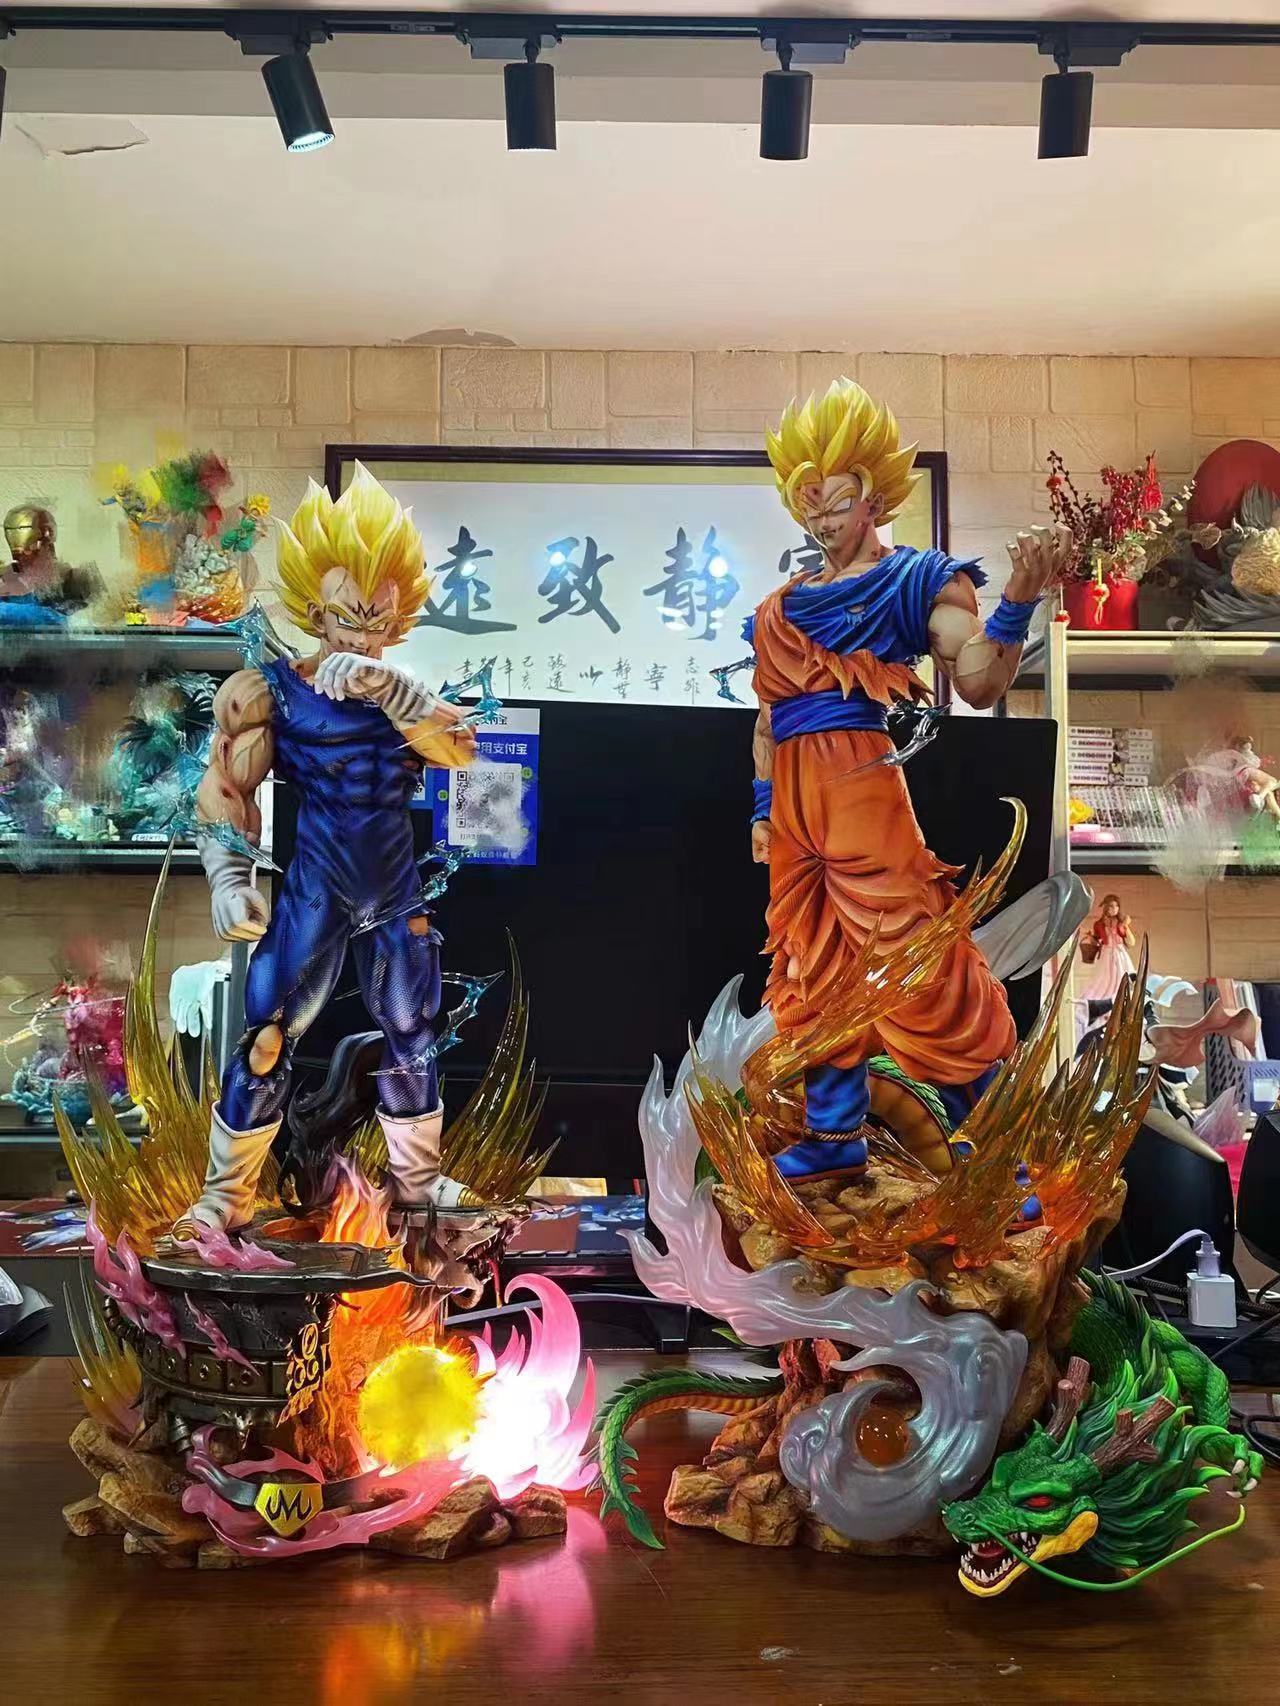 Pre order】Temple Studio Dragon Ball Z Goku SSJ2 VS Majin Vegeta 1/4 Scale  Resin Statue Deposit